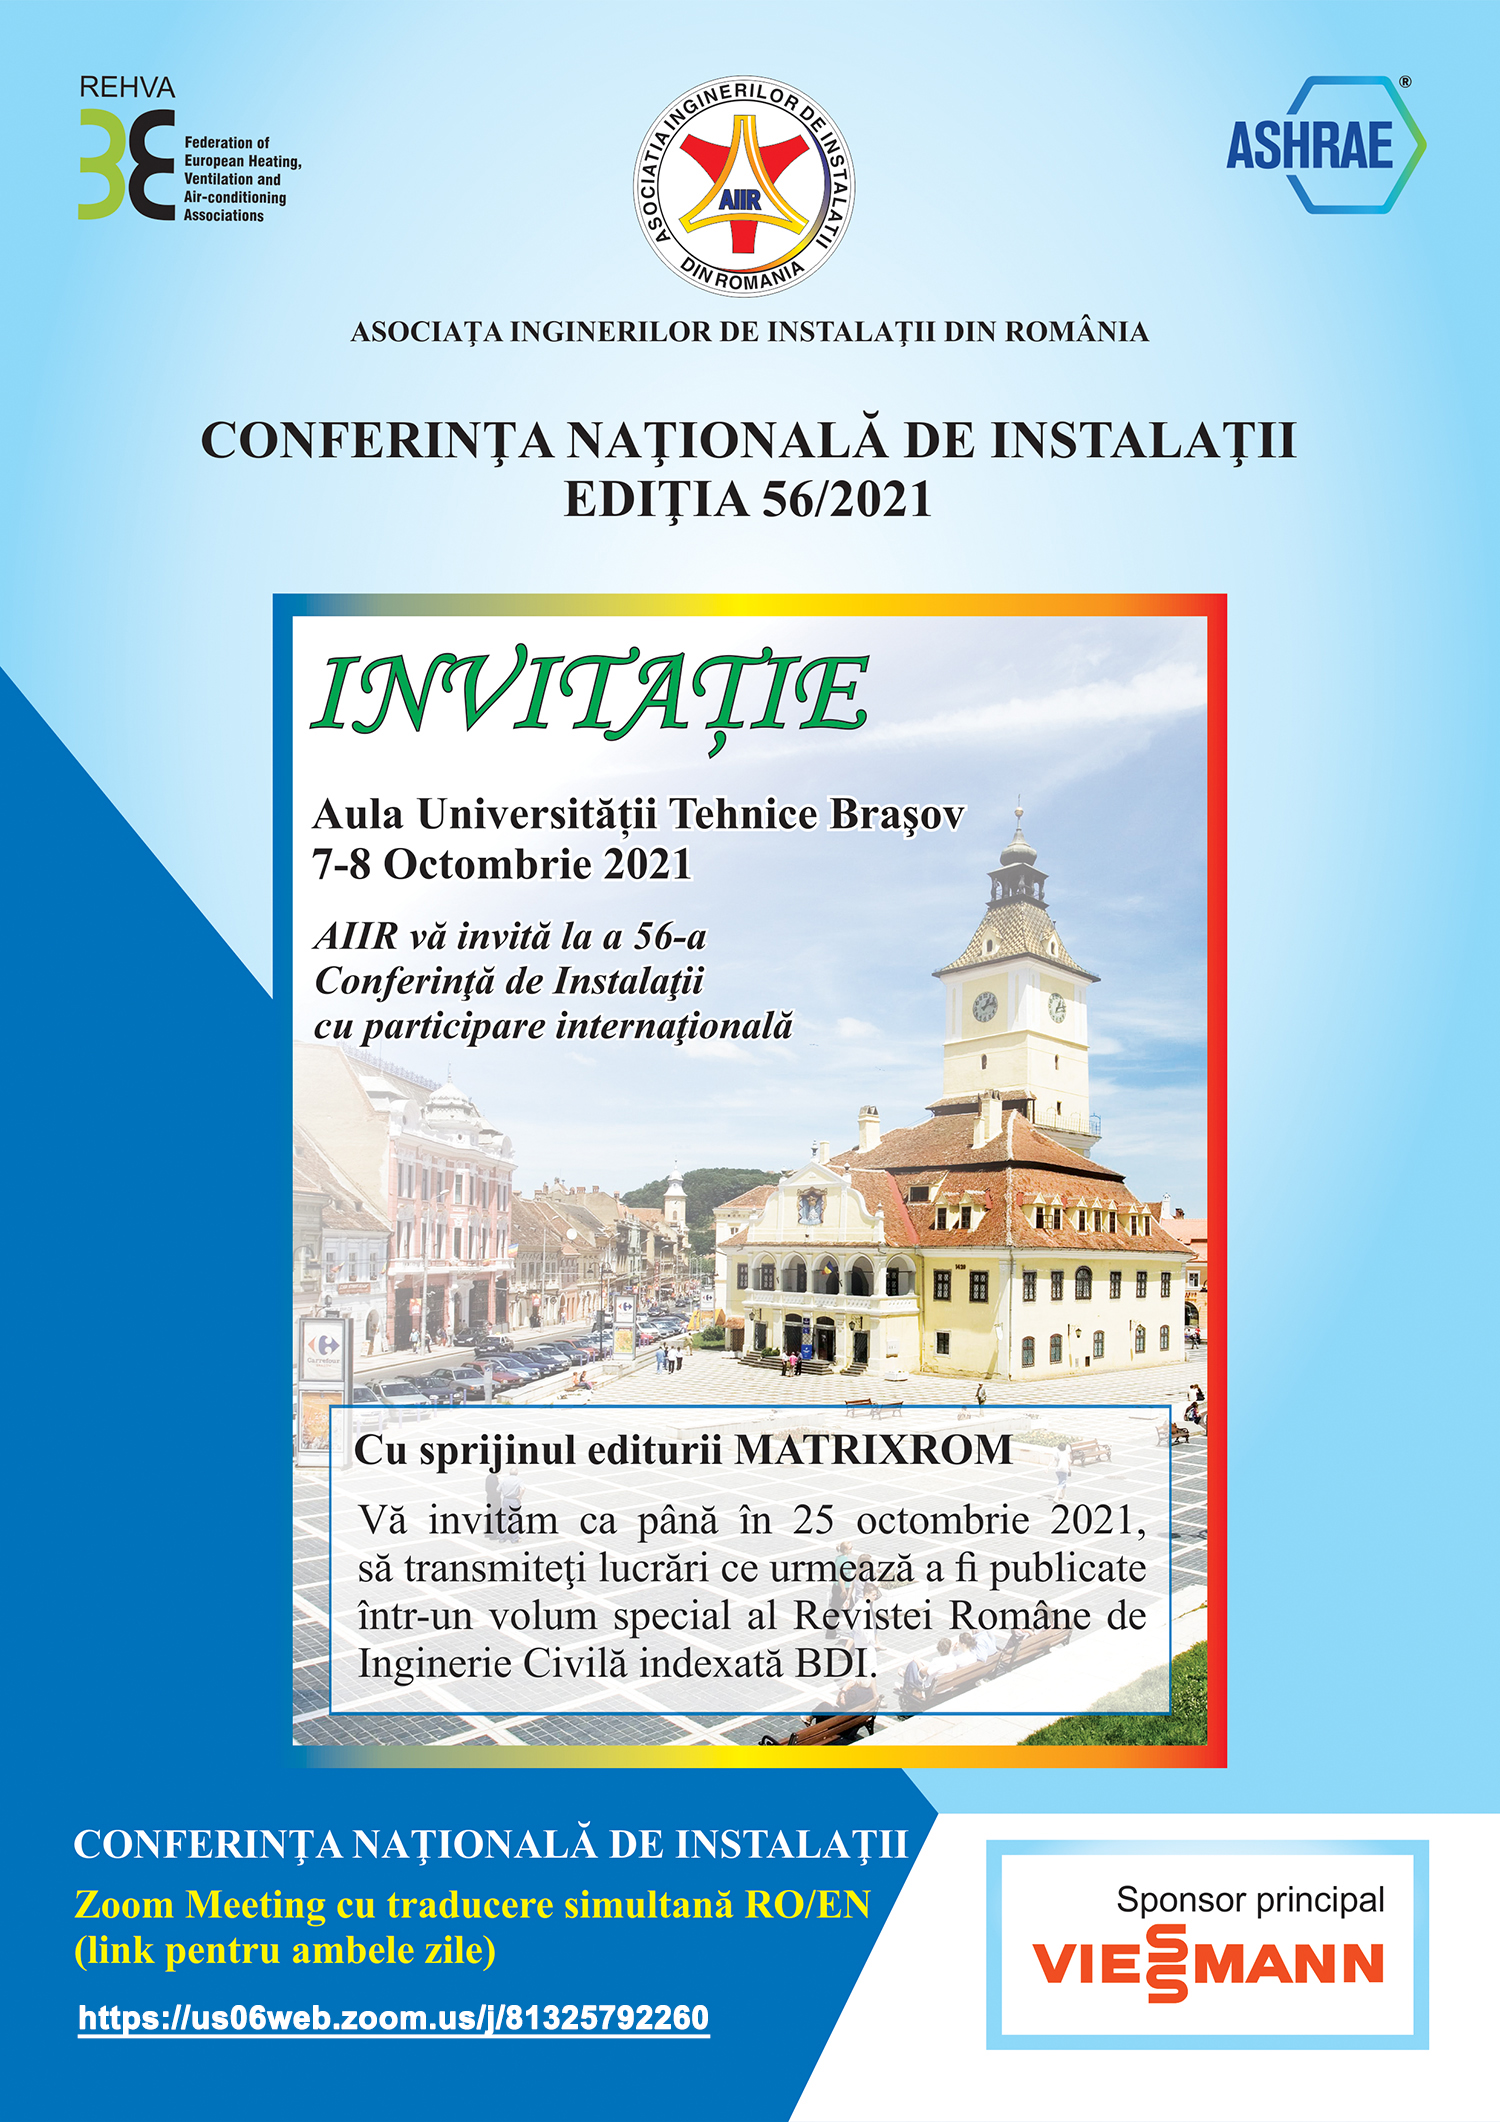 INVITATIE CONFERINTA NATIONALA DE INSTALATII - EDITIA 56/2021, Brasov